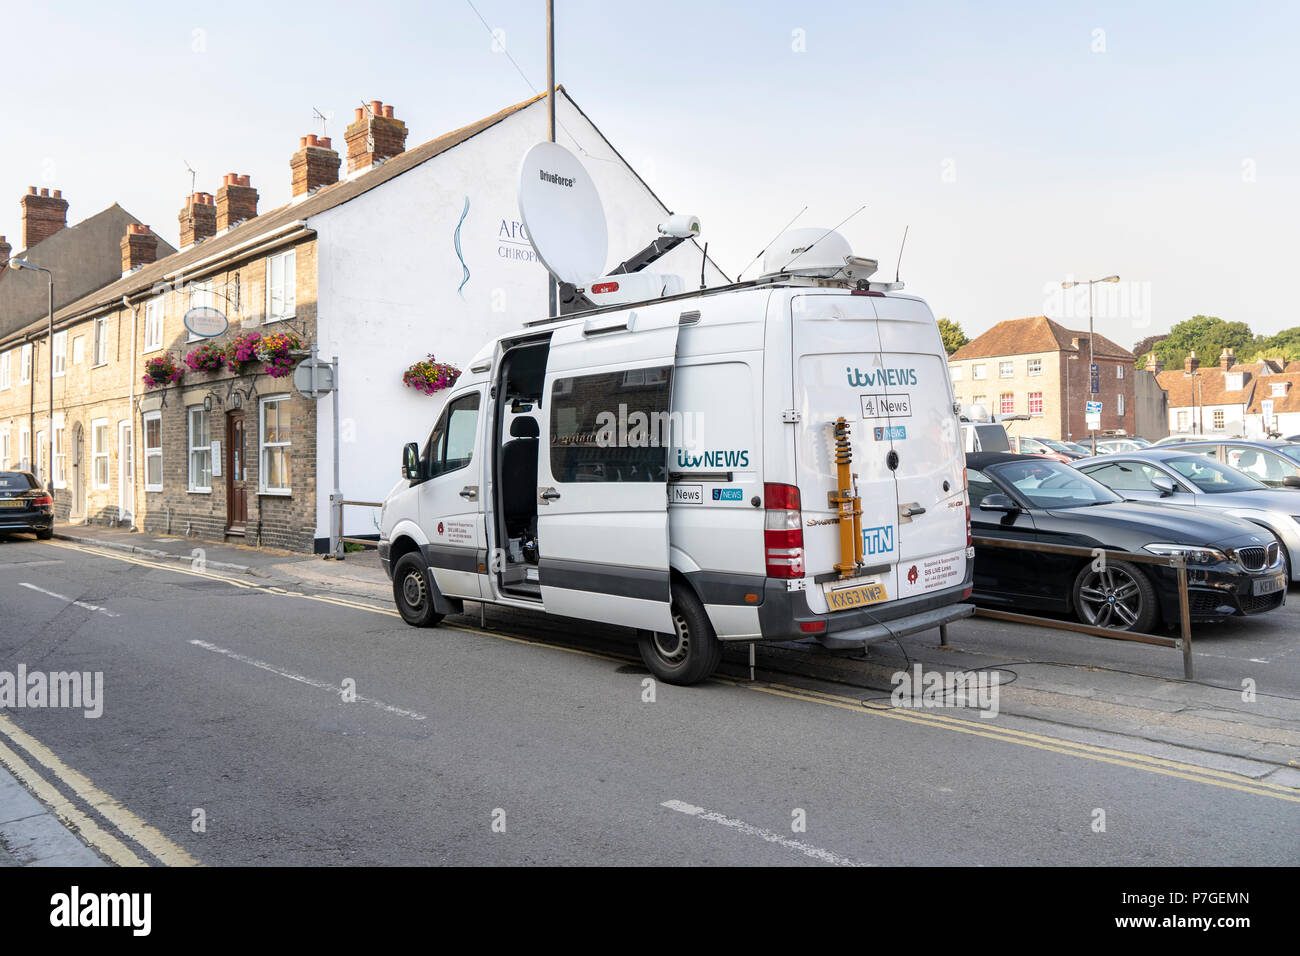 ITV News outside broadcast van in Salisbury UK Stock Photo